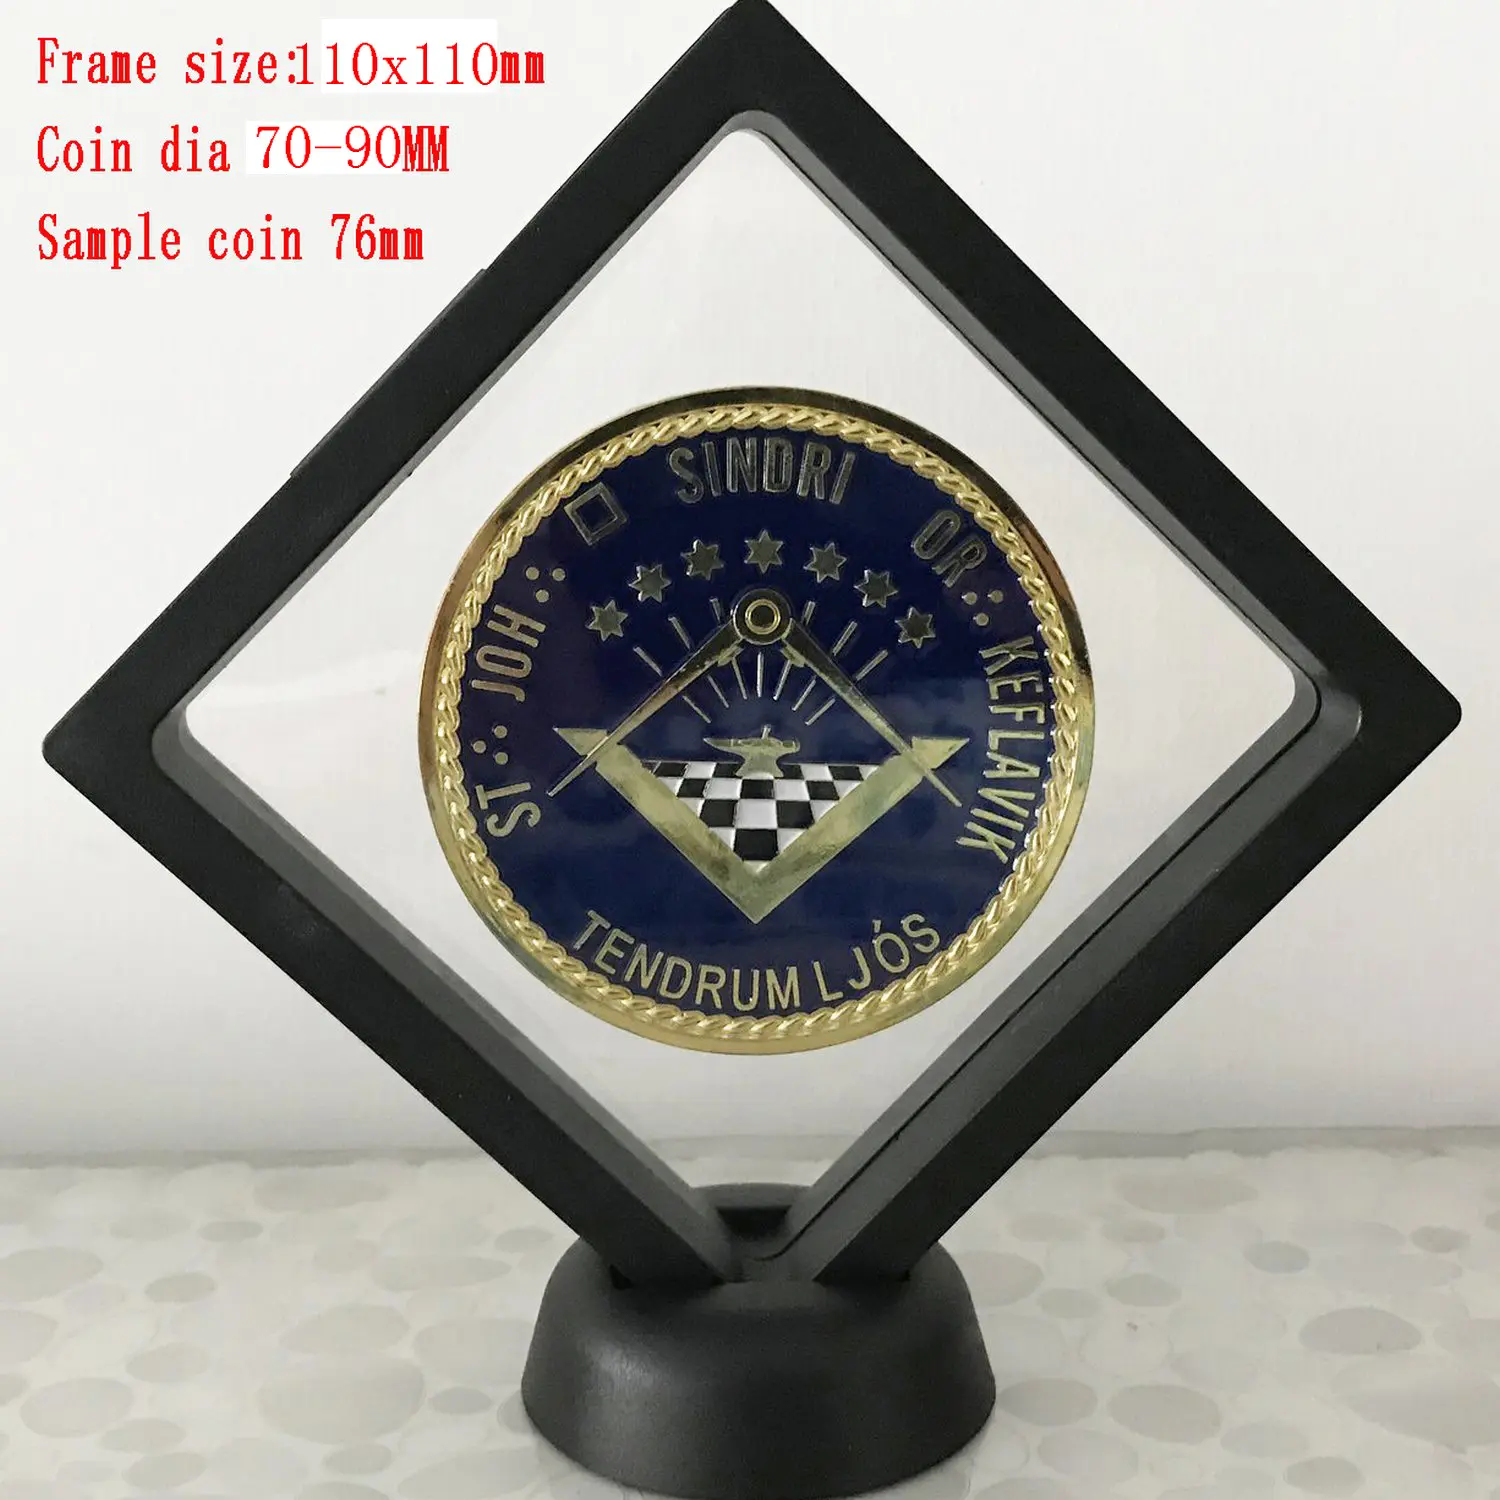 Caja de marco de exhibición de diseño simple 110X110mm, caja de material ABS para exhibición de monedas de joyería blanca y negra